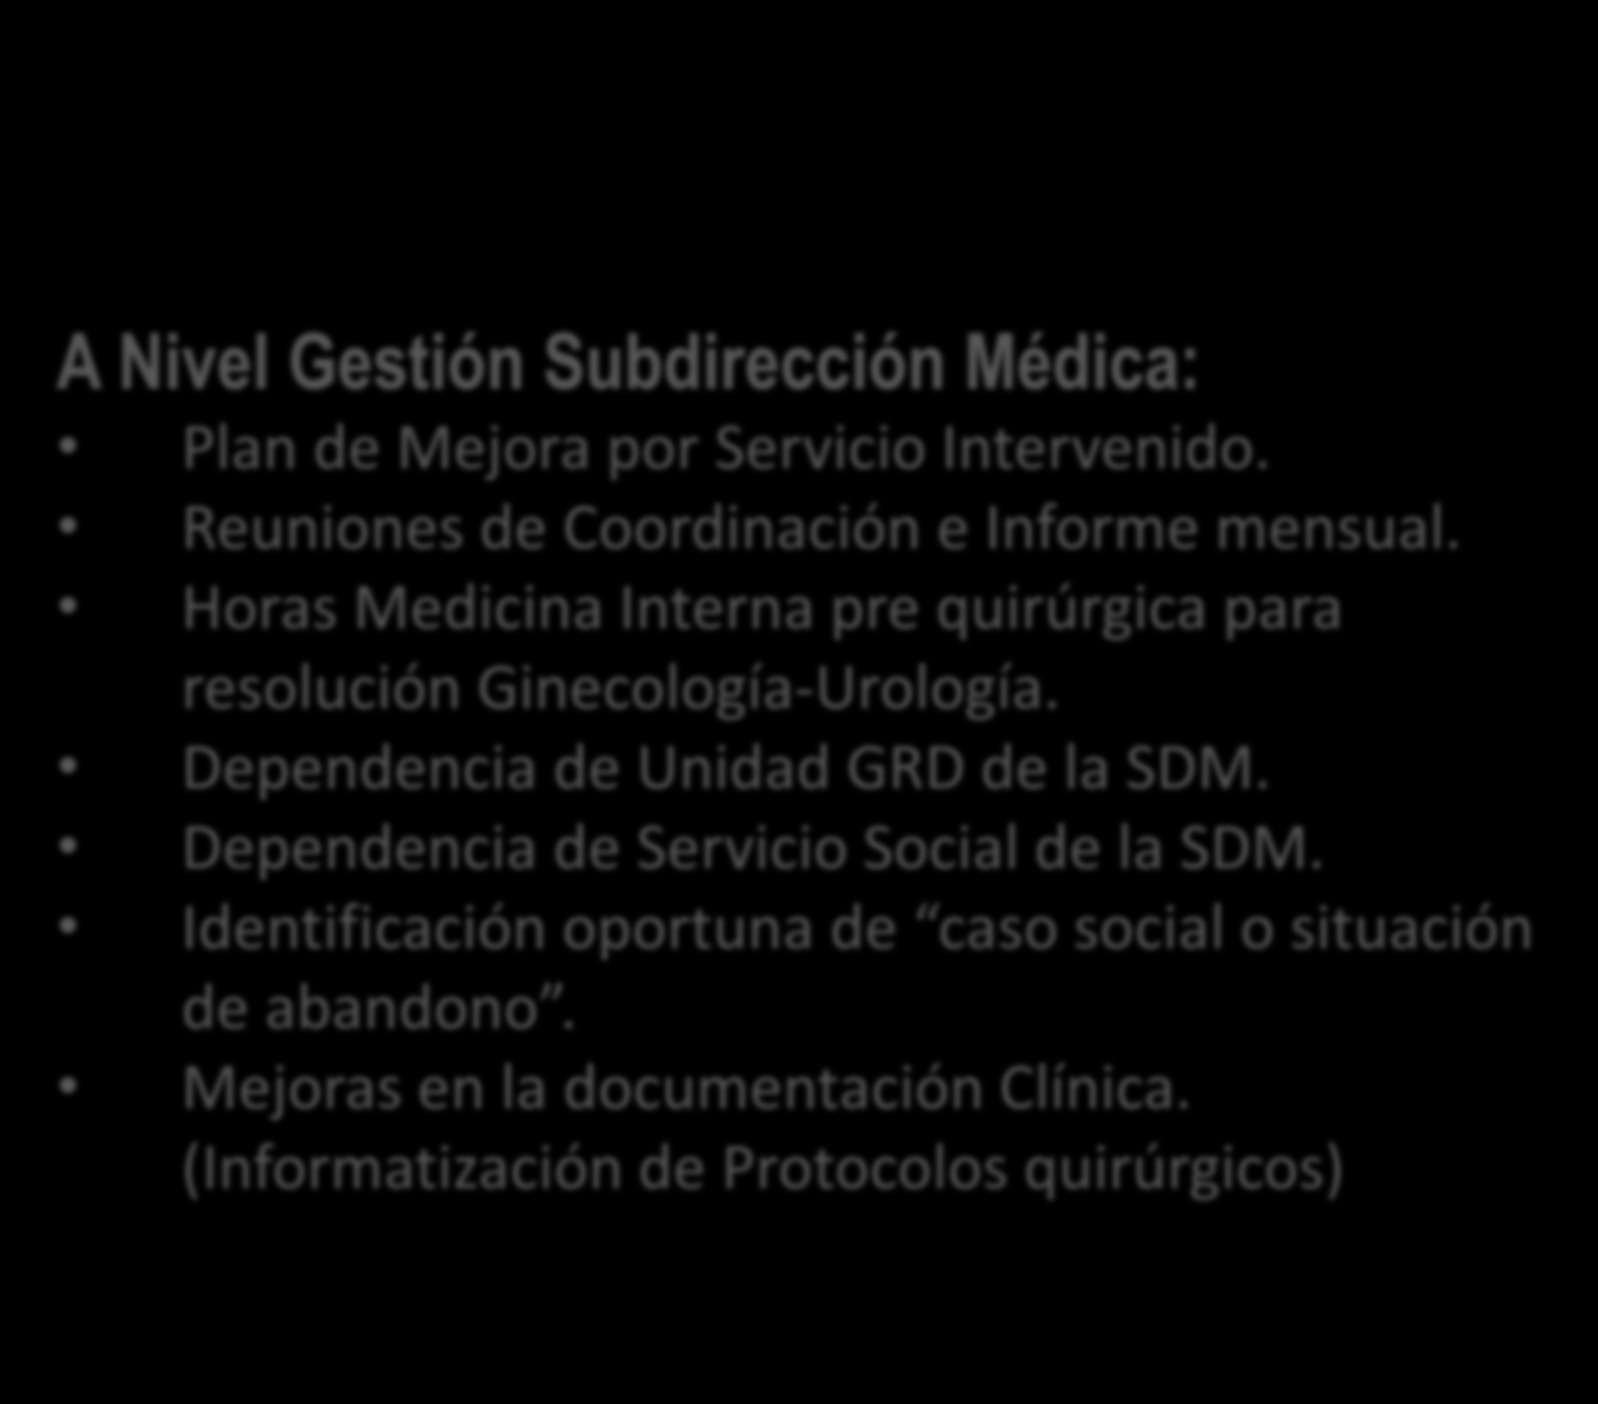 Acciones iniciales de Intervención: A Nivel Gestión Subdirección Médica: Plan de Mejora por Servicio Intervenido. Reuniones de Coordinación e Informe mensual.